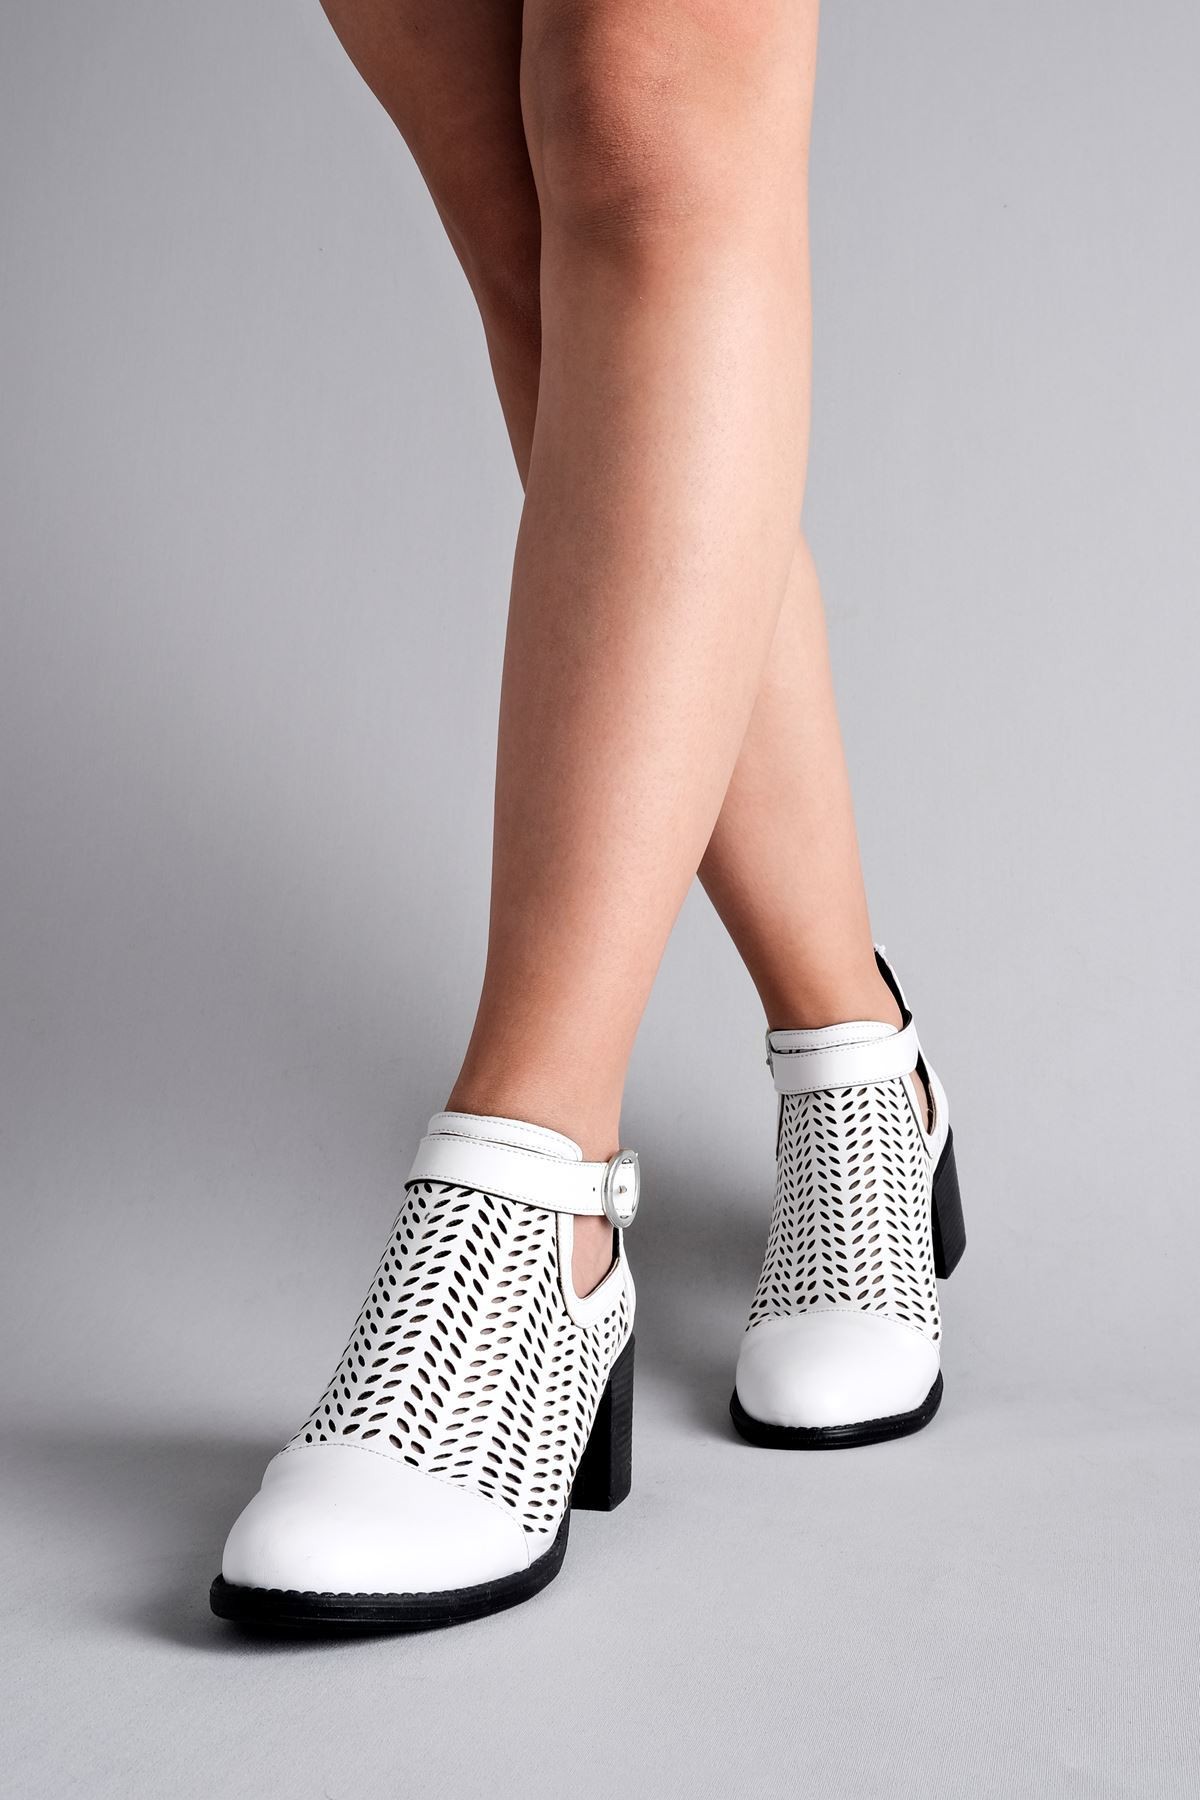 Adele Kadın Yazlık Delikli Bot Topuklu Ayakkabı (B2236) - Beyaz